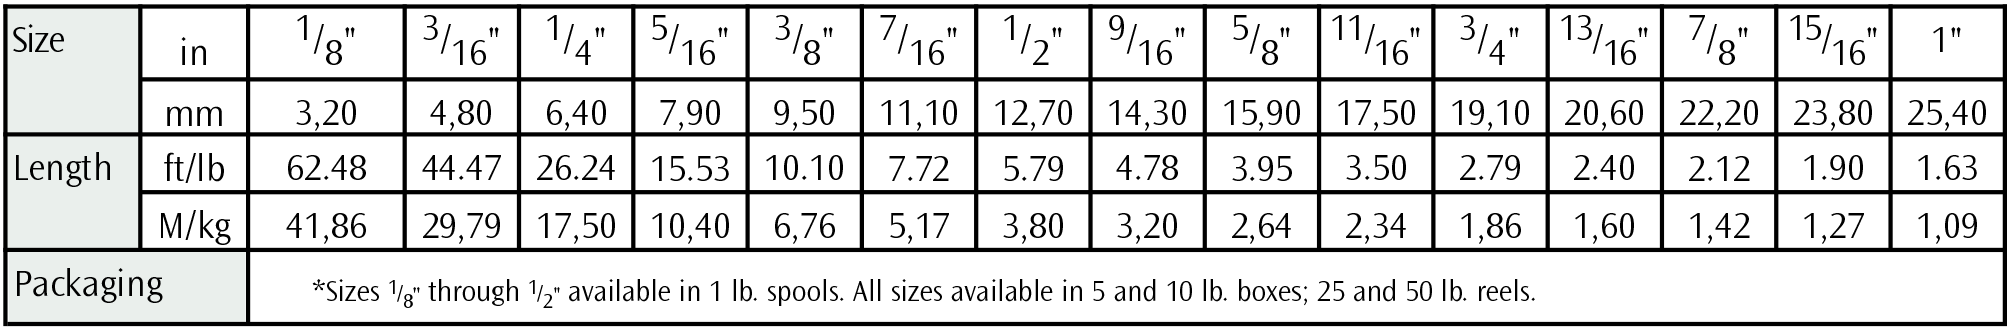 Datasheet 1389GFO Table